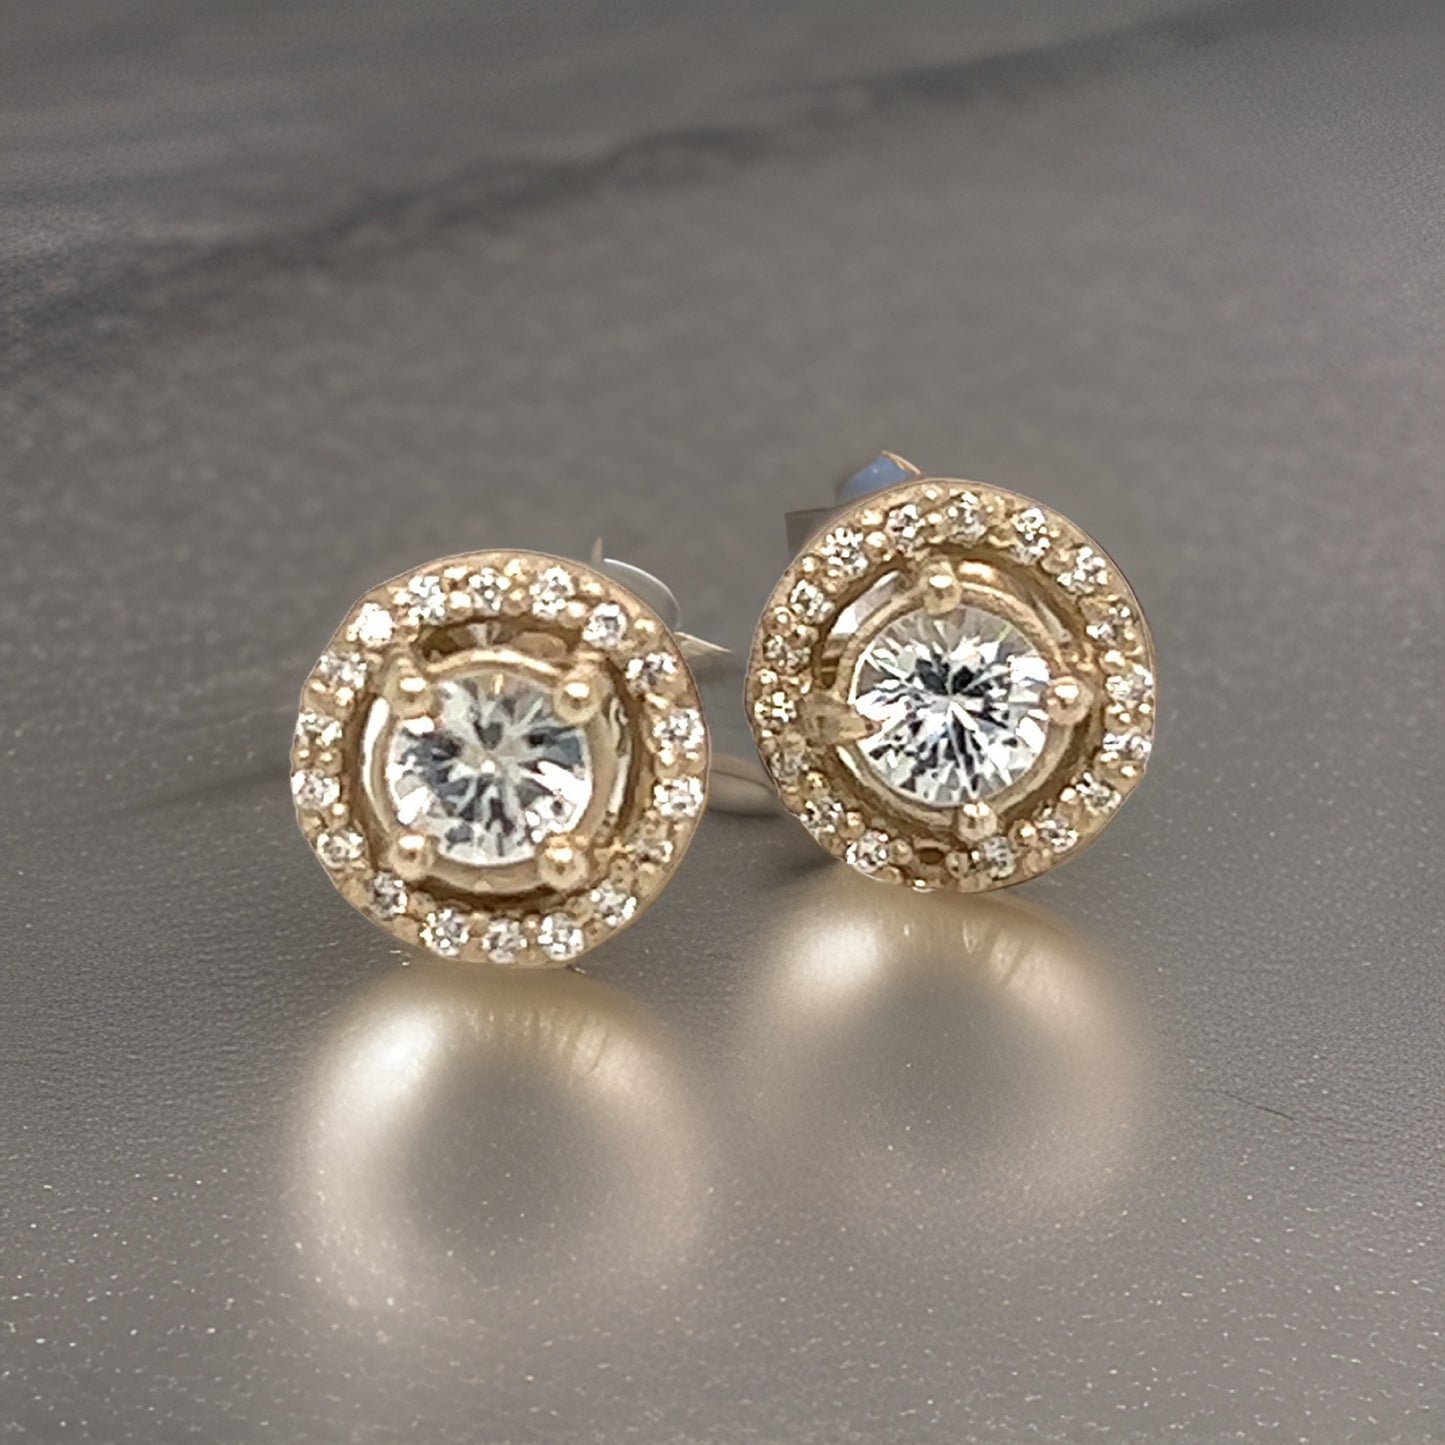 Natural Sapphire Diamond Stud Earrings 14k W Gold 0.83 TCW Certified $2,950 215614 - Certified Fine Jewelry